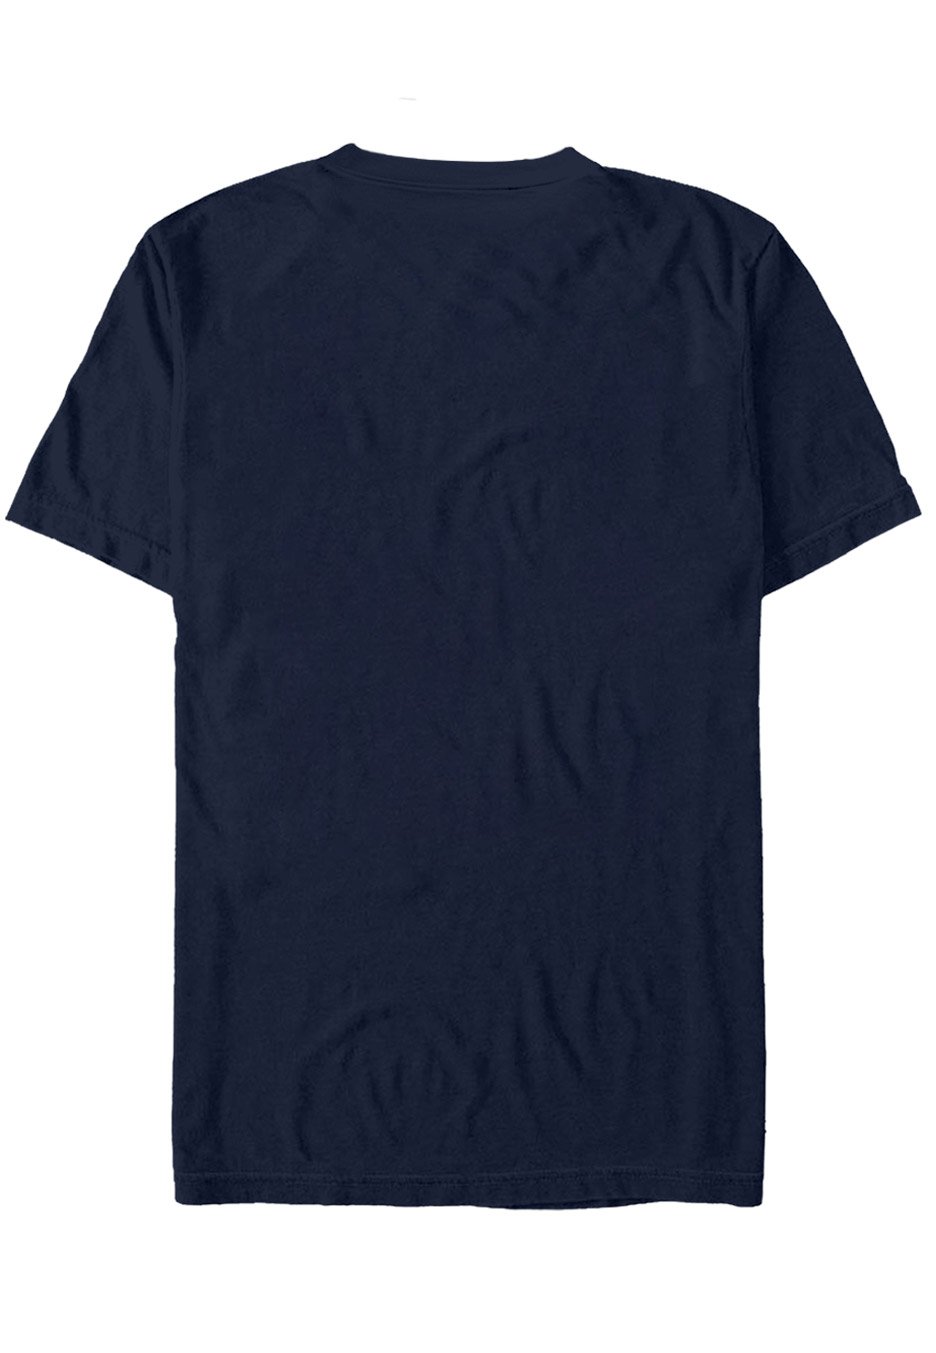 Comeback Kid - Circle Navy - T-Shirt